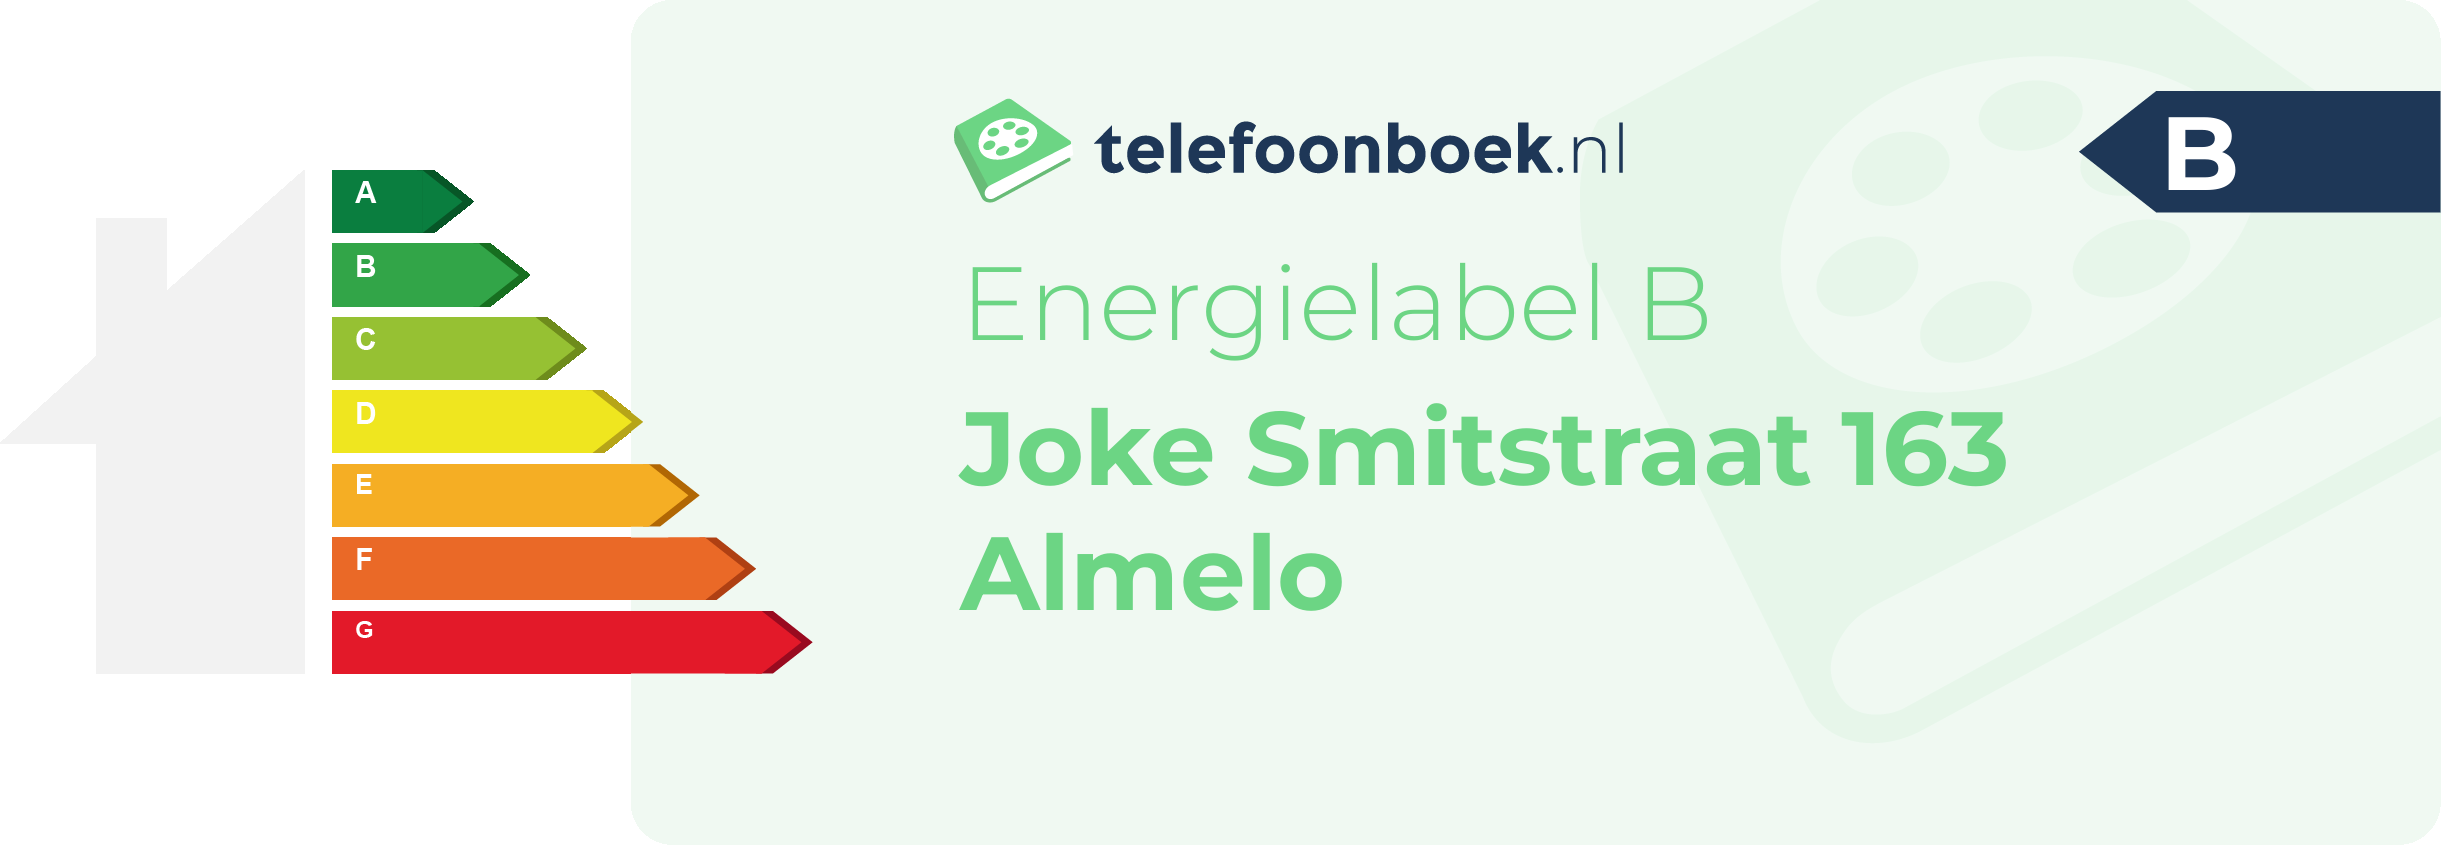 Energielabel Joke Smitstraat 163 Almelo